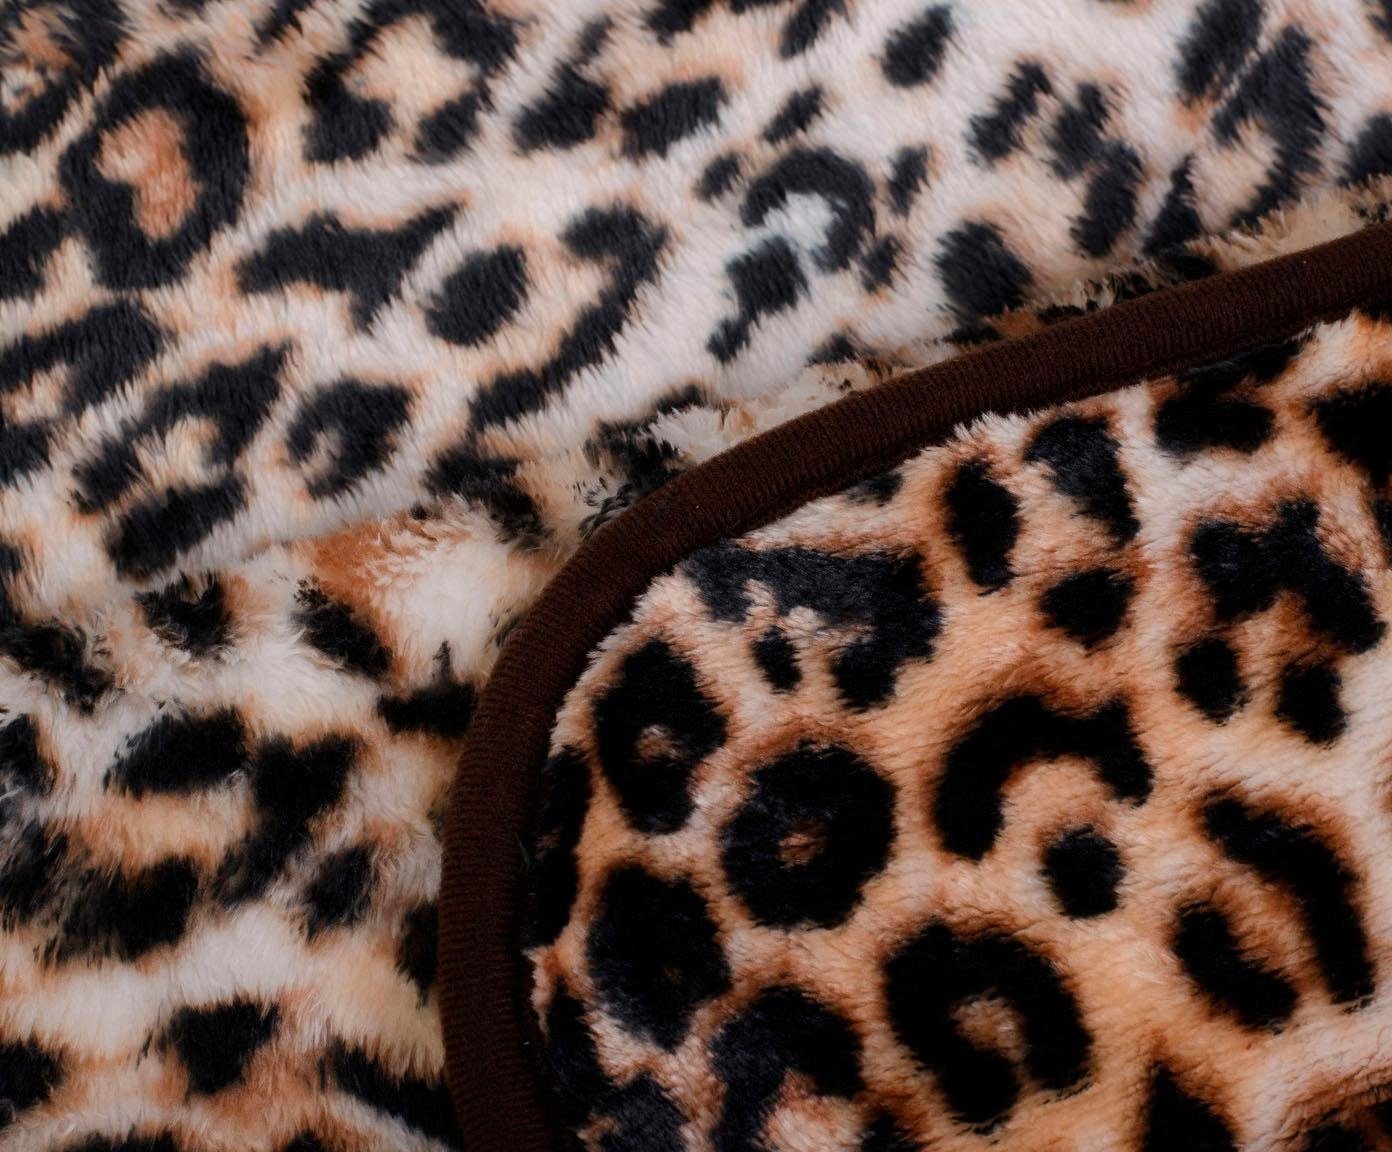 Gözze Wohndecke »Leopard«, mit gedrucktem Motiv, jetzt Kuscheldecke kaufen